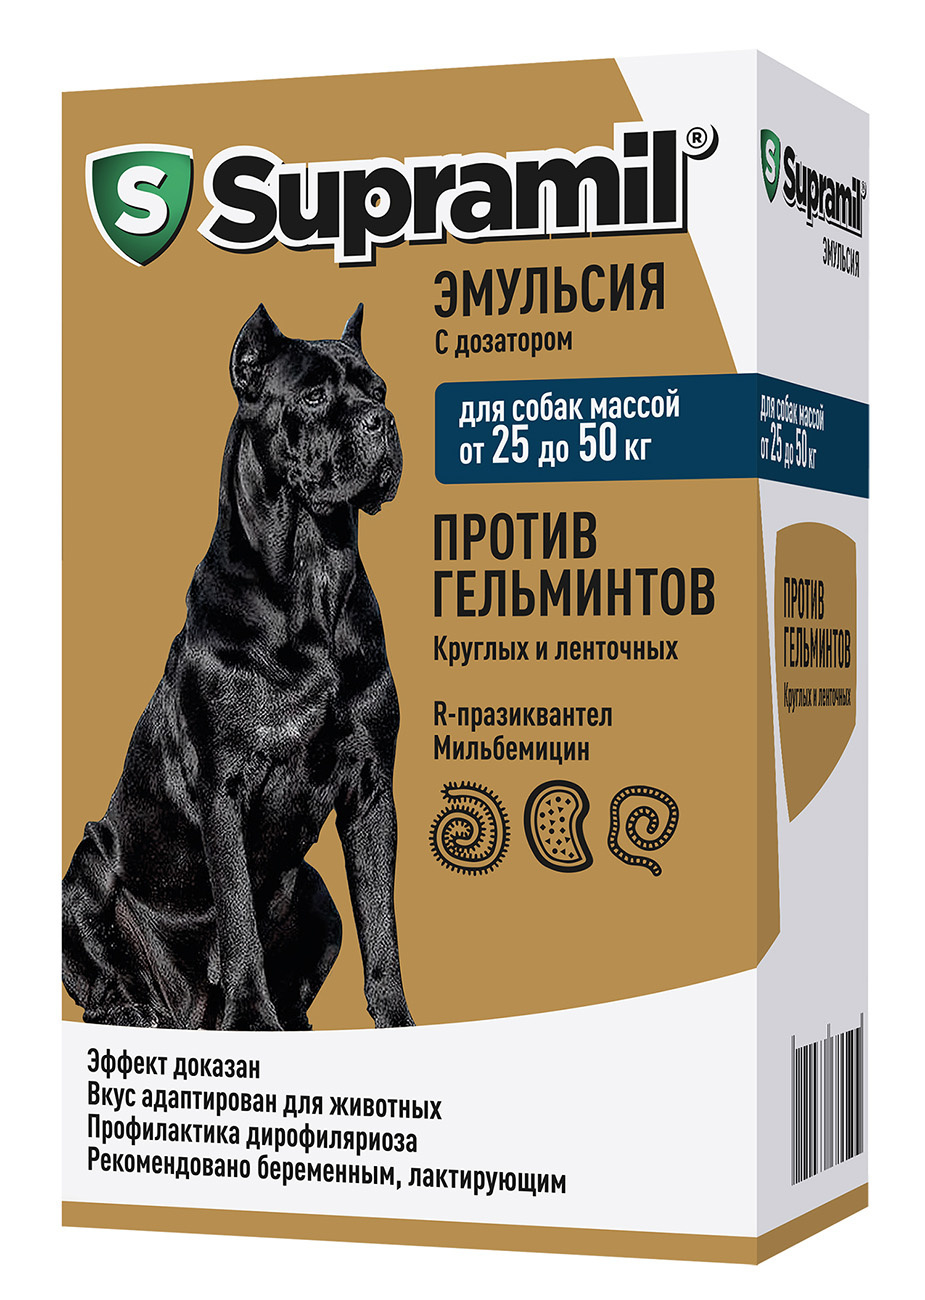 Астрафарм Астрафарм супрамил эмульсия для собак массой от 25 до 50 кг (77 г) астрафарм астрафарм супрамил эмульсия для щенков и собак от 10 до 25 кг 71 г